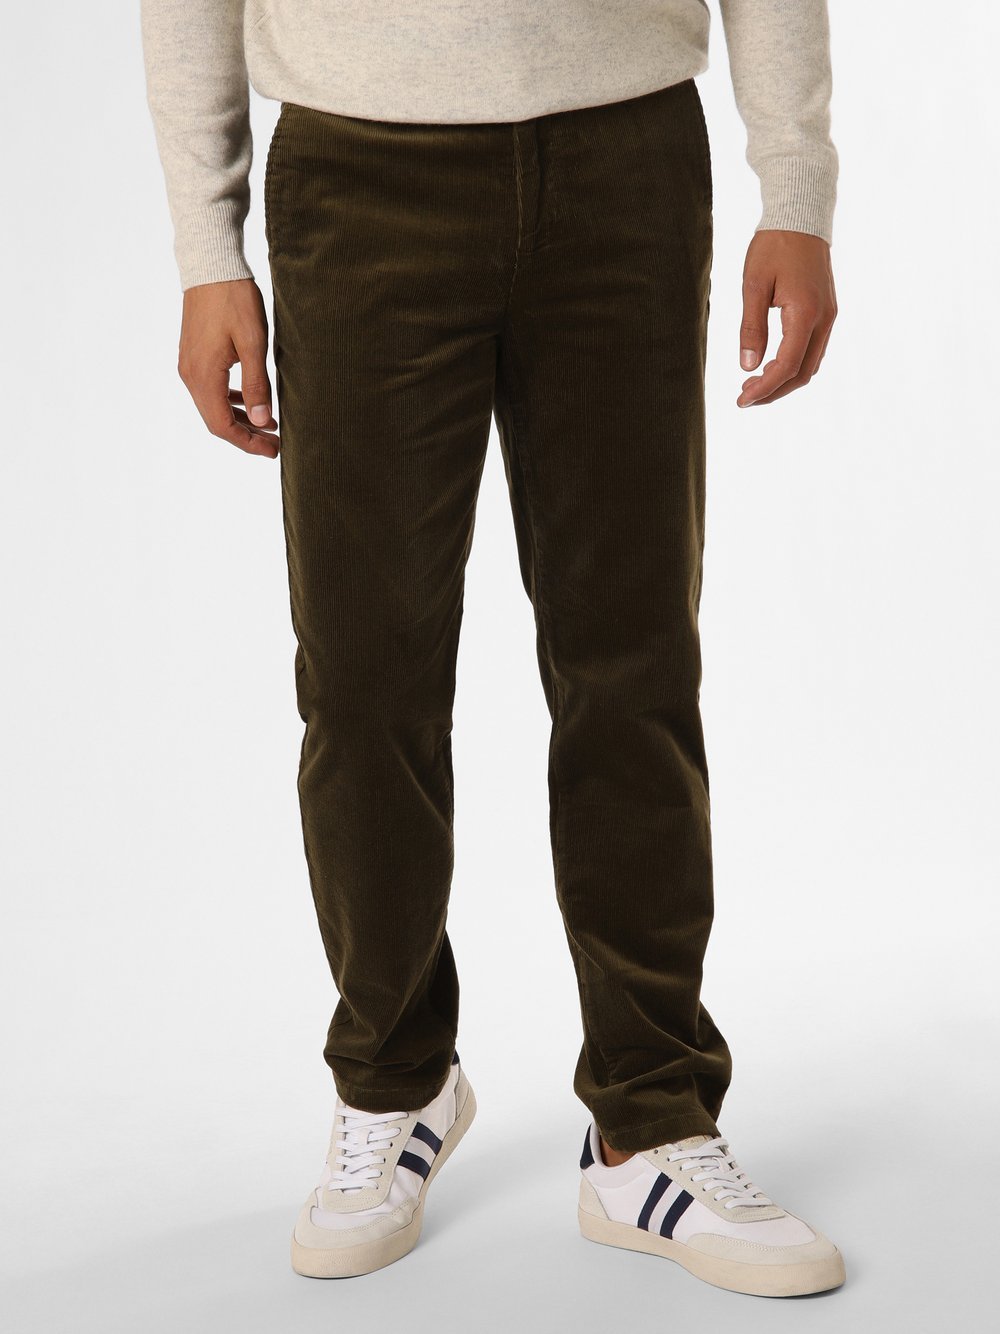 Gant - Spodnie męskie, zielony